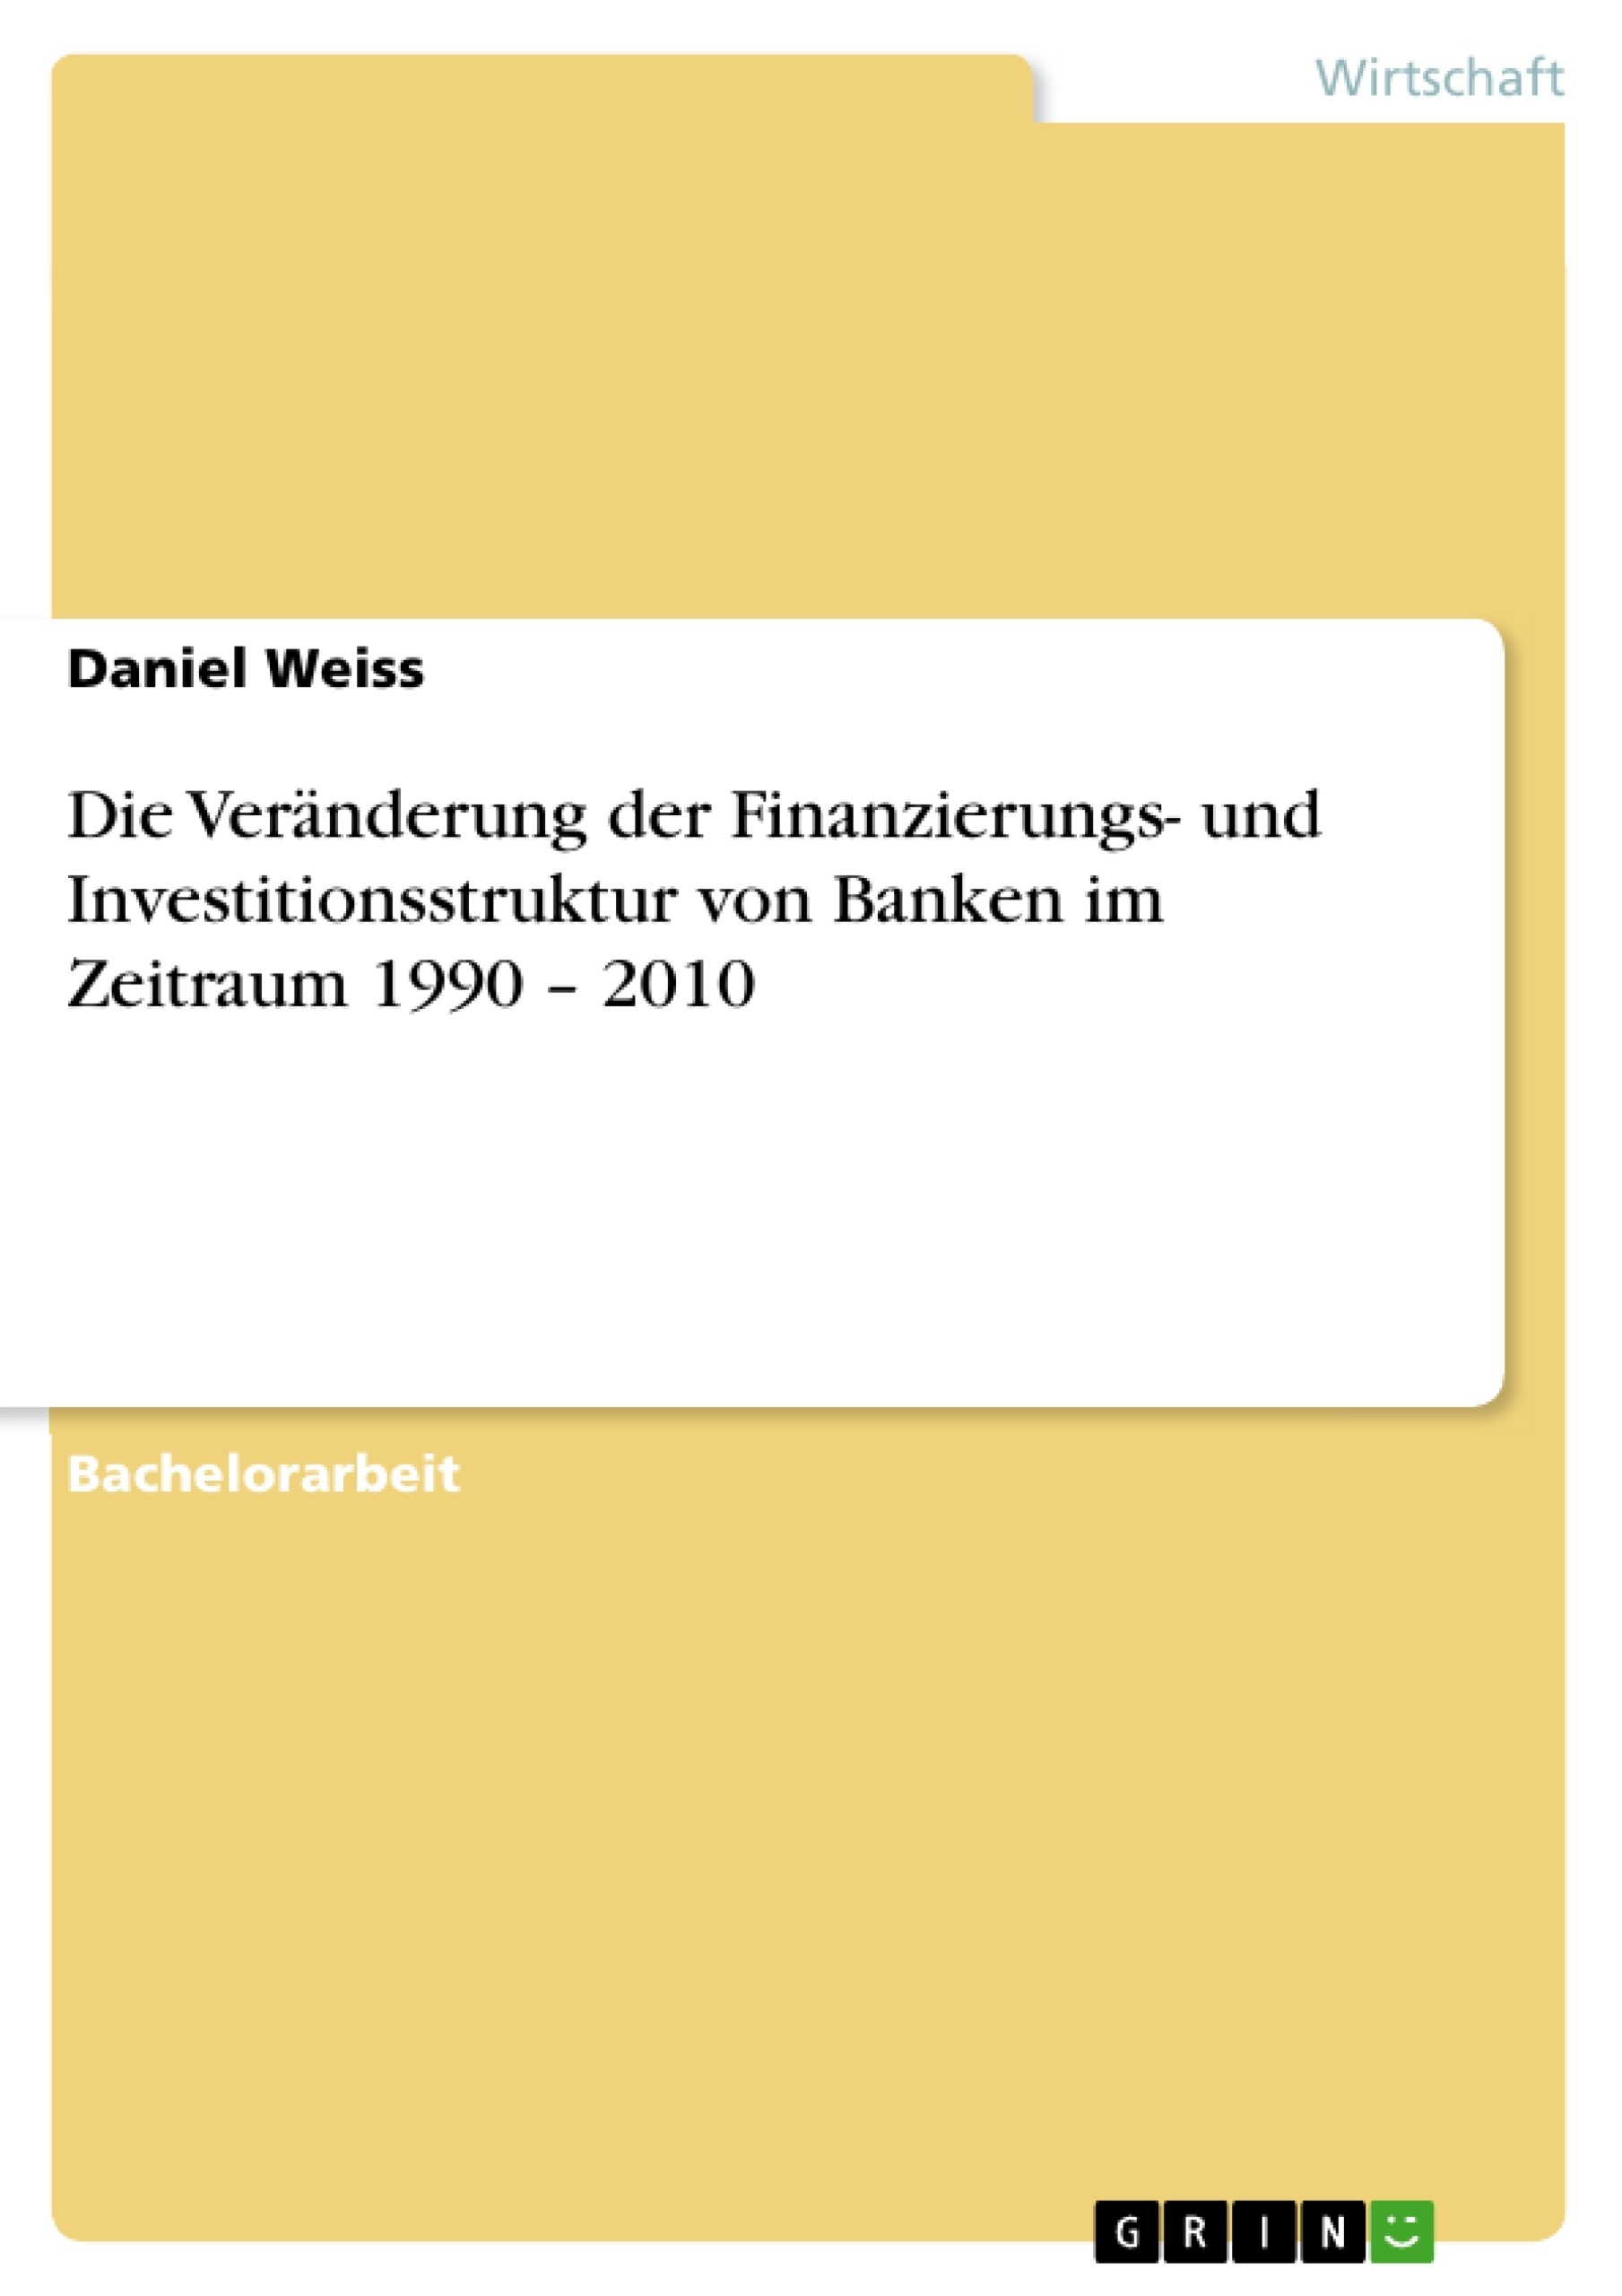 Título: Die Veränderung der Finanzierungs- und Investitionsstruktur von Banken im Zeitraum 1990 – 2010